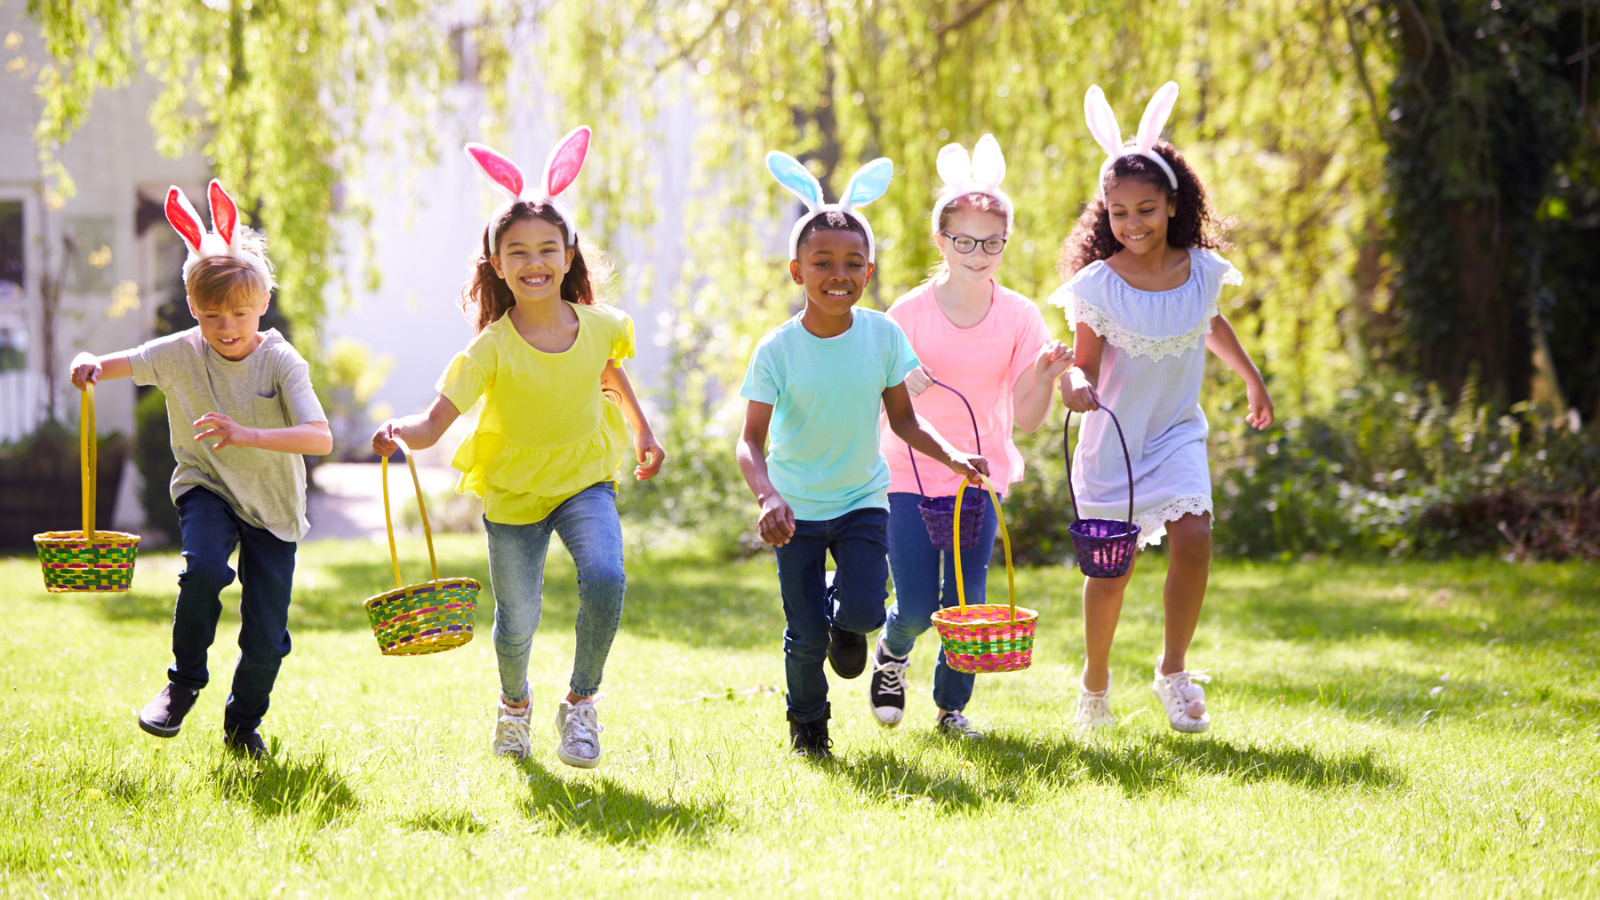 Group of kids holding baskets for egg hunt